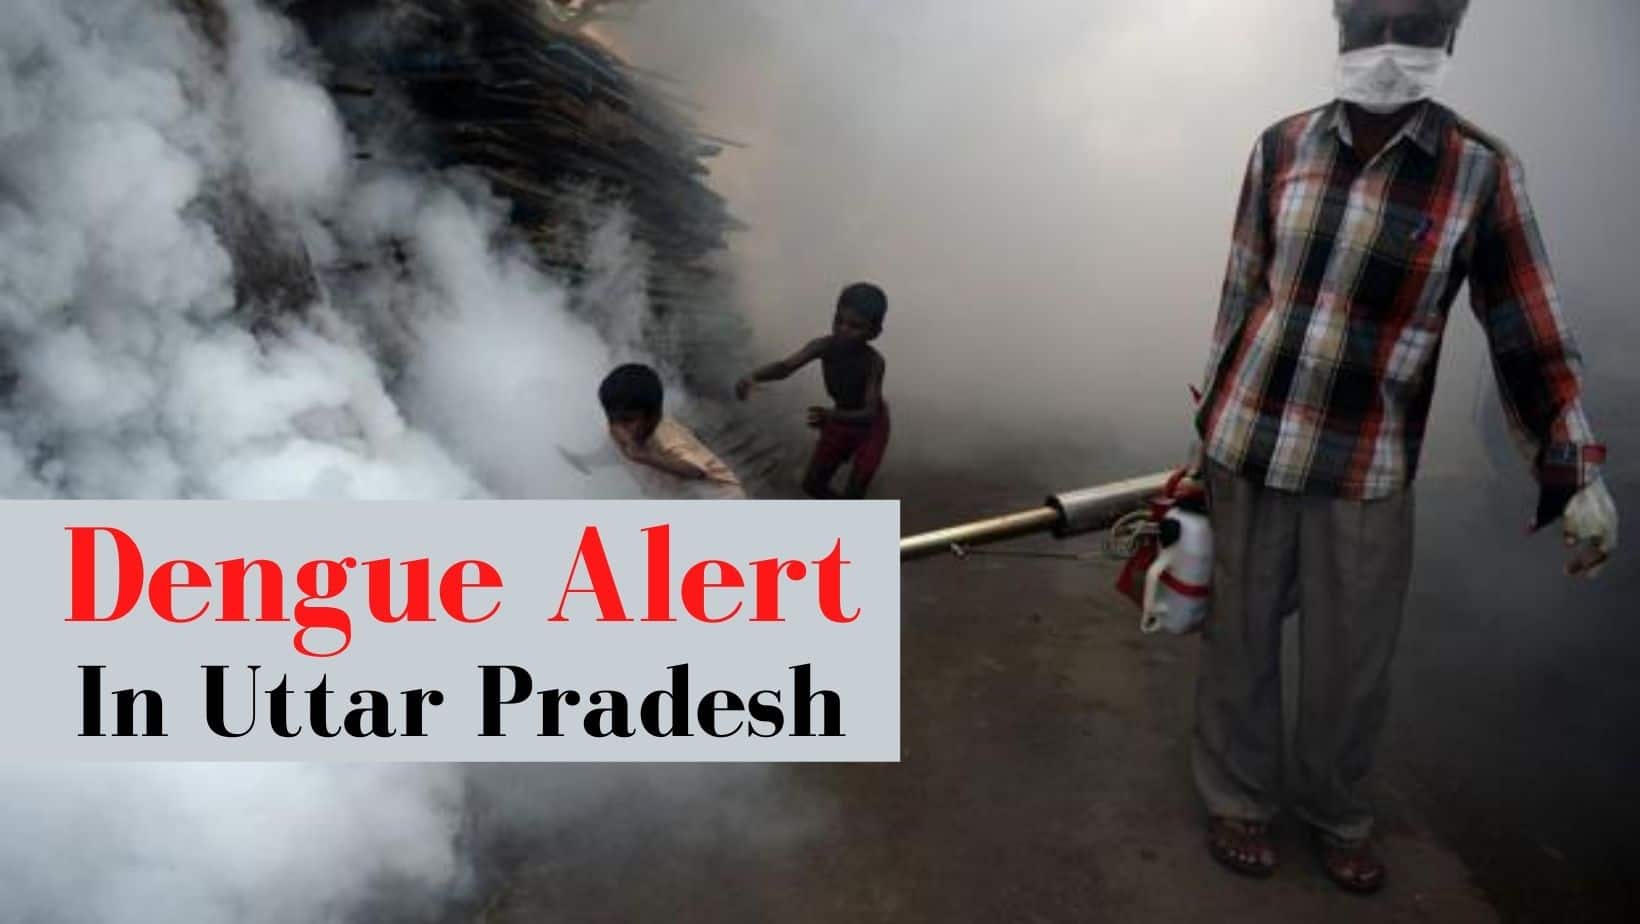 Uttar Pradesh On High Alert Over Dengue Outbreak: 'Do Not Take Your Fever Lightly', Caution Government